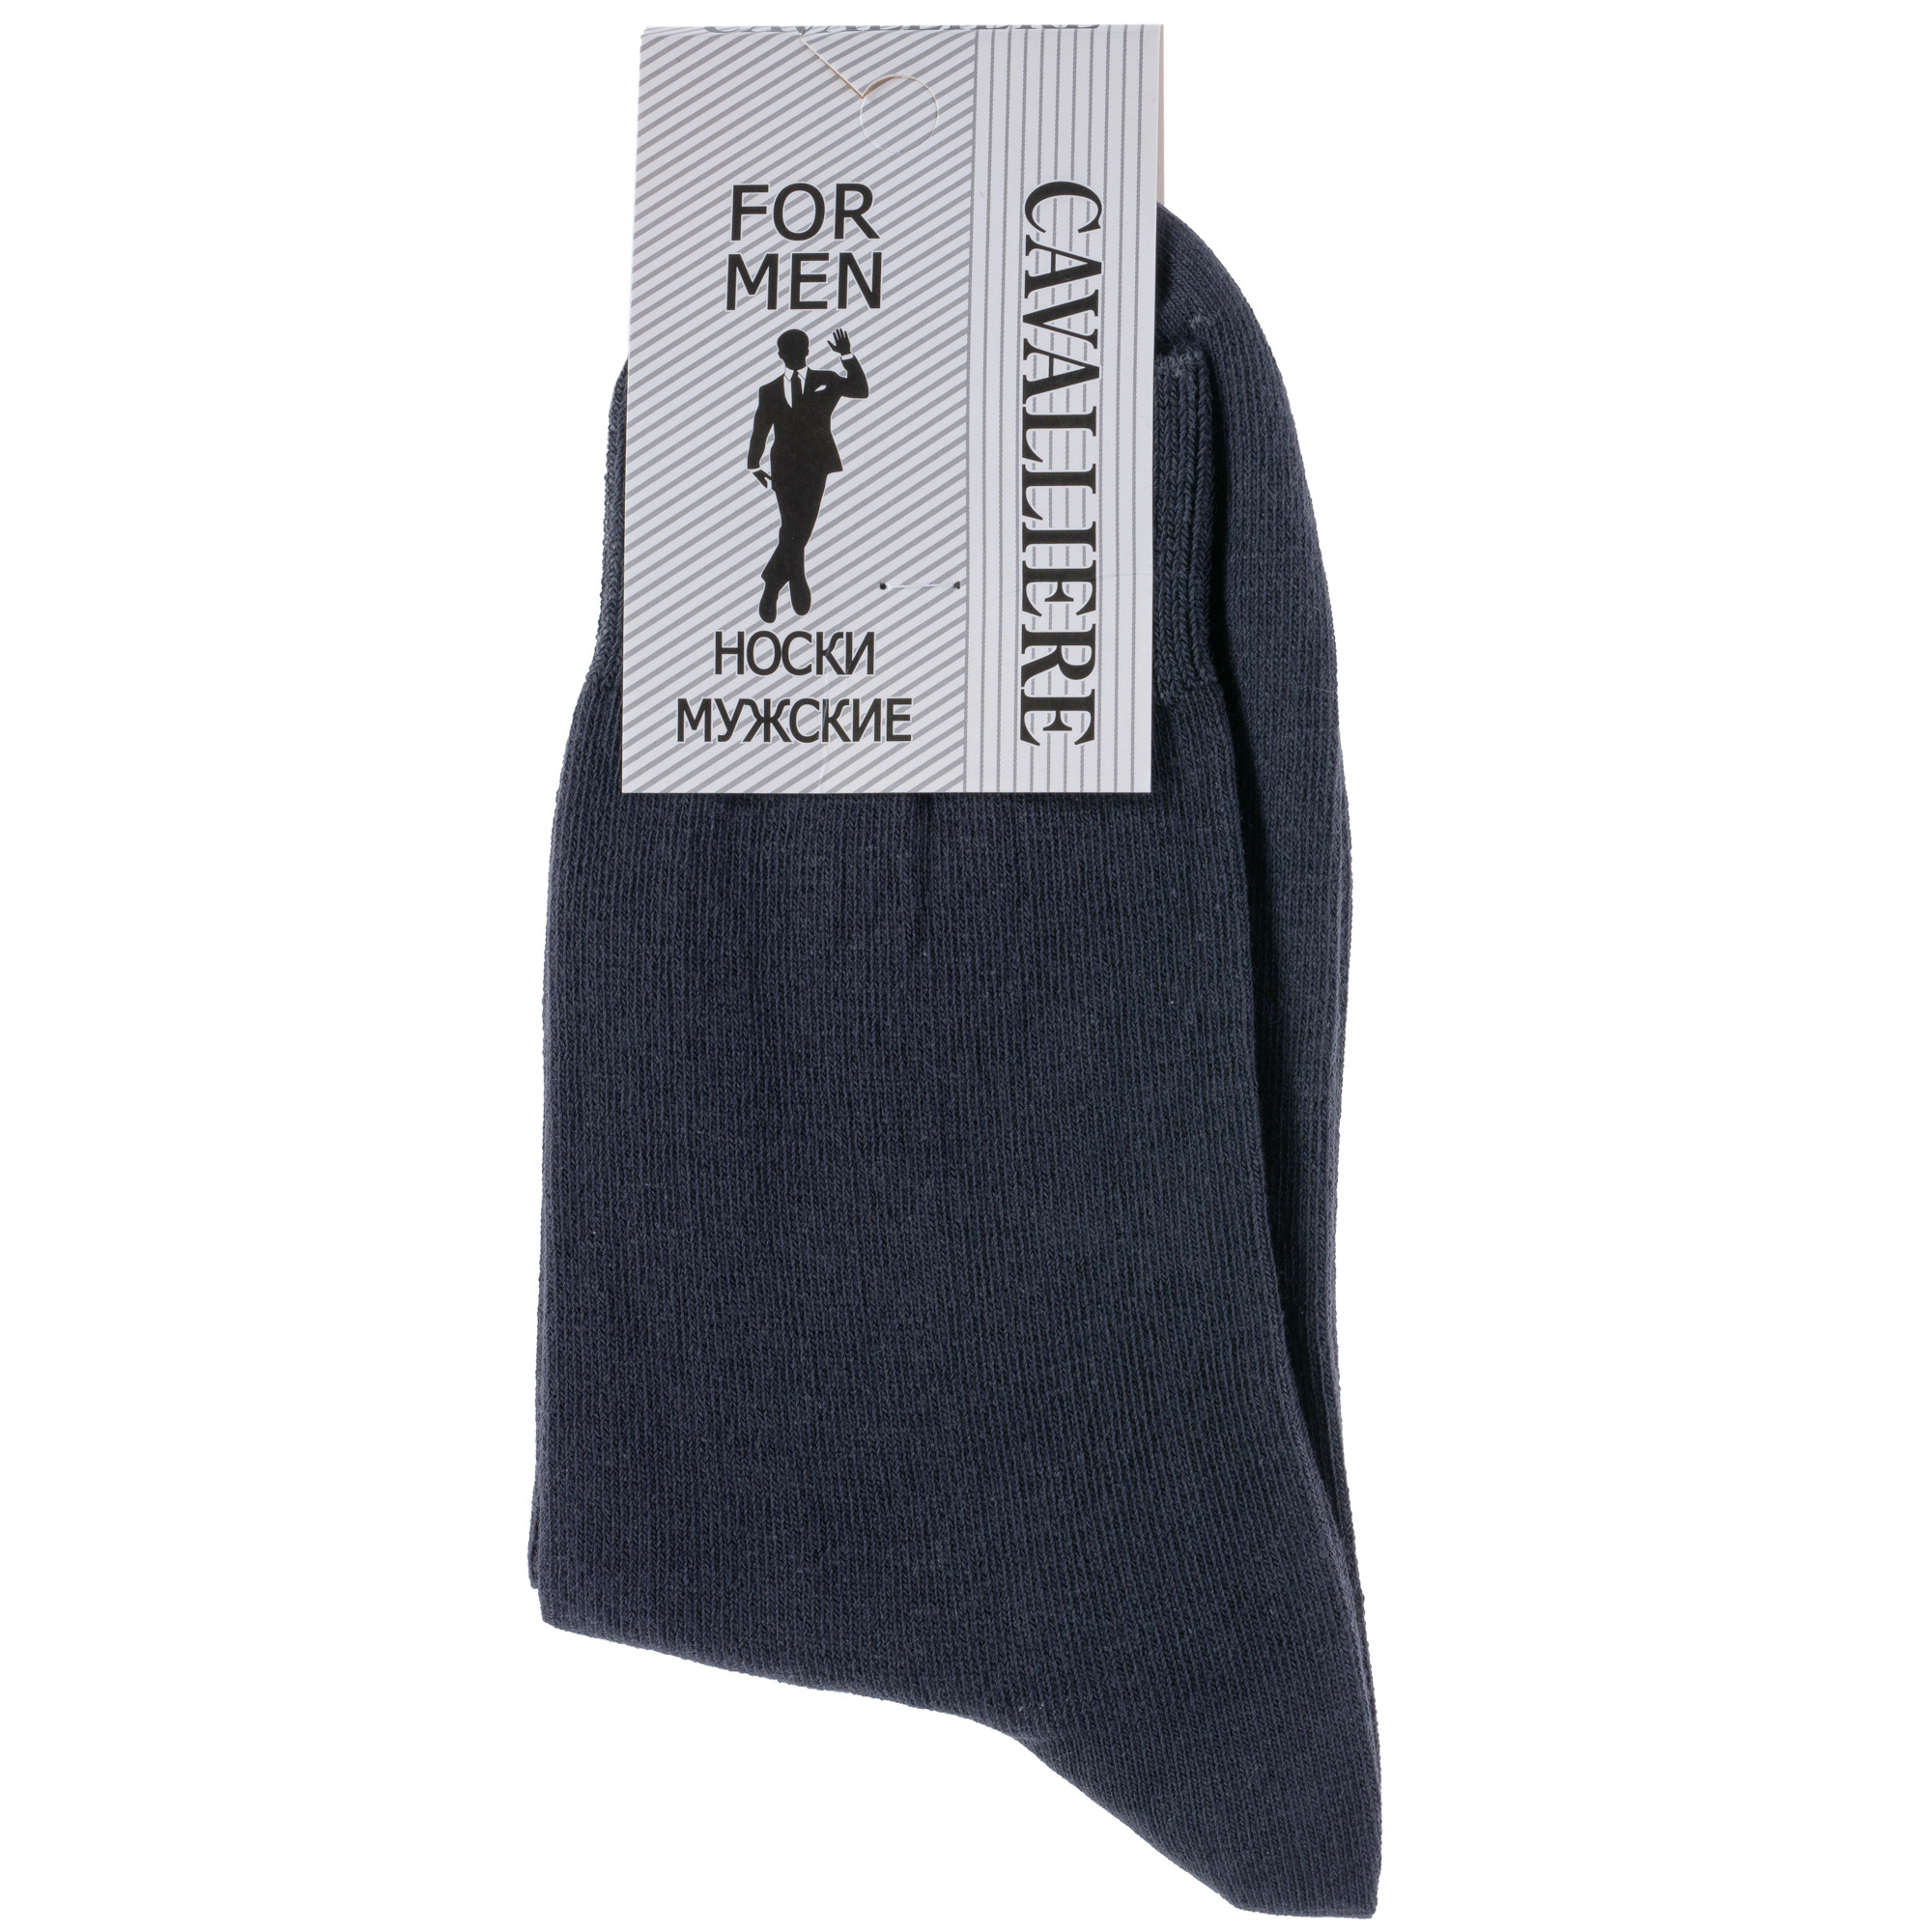 Мужские носки CAVALLIERE (RuSocks)